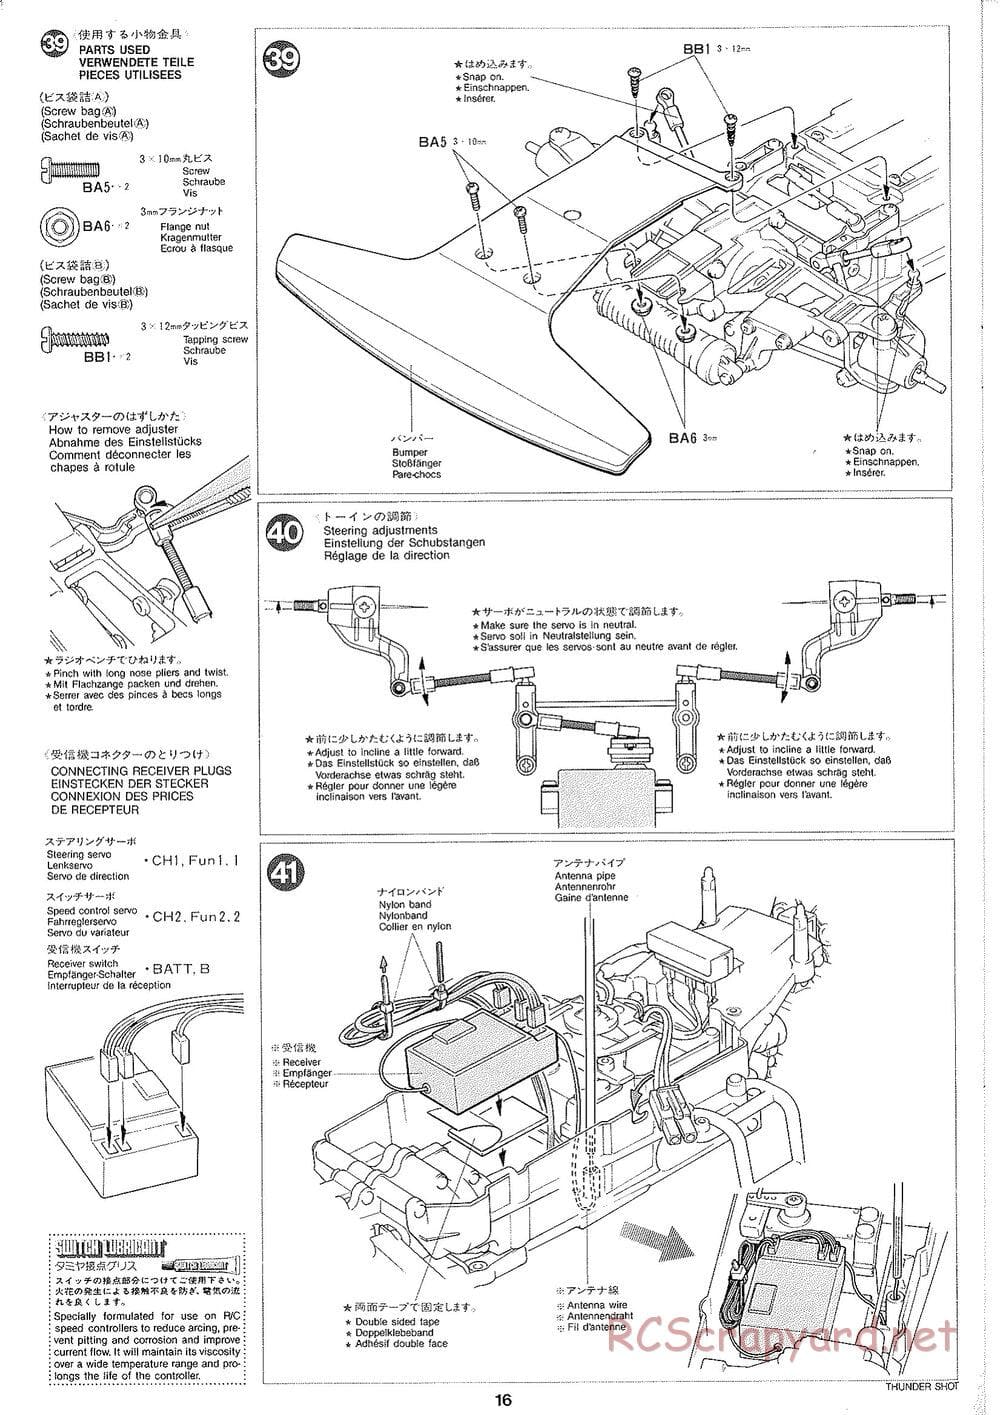 Tamiya - Thunder Shot - TS1 Chassis - Manual - Page 17